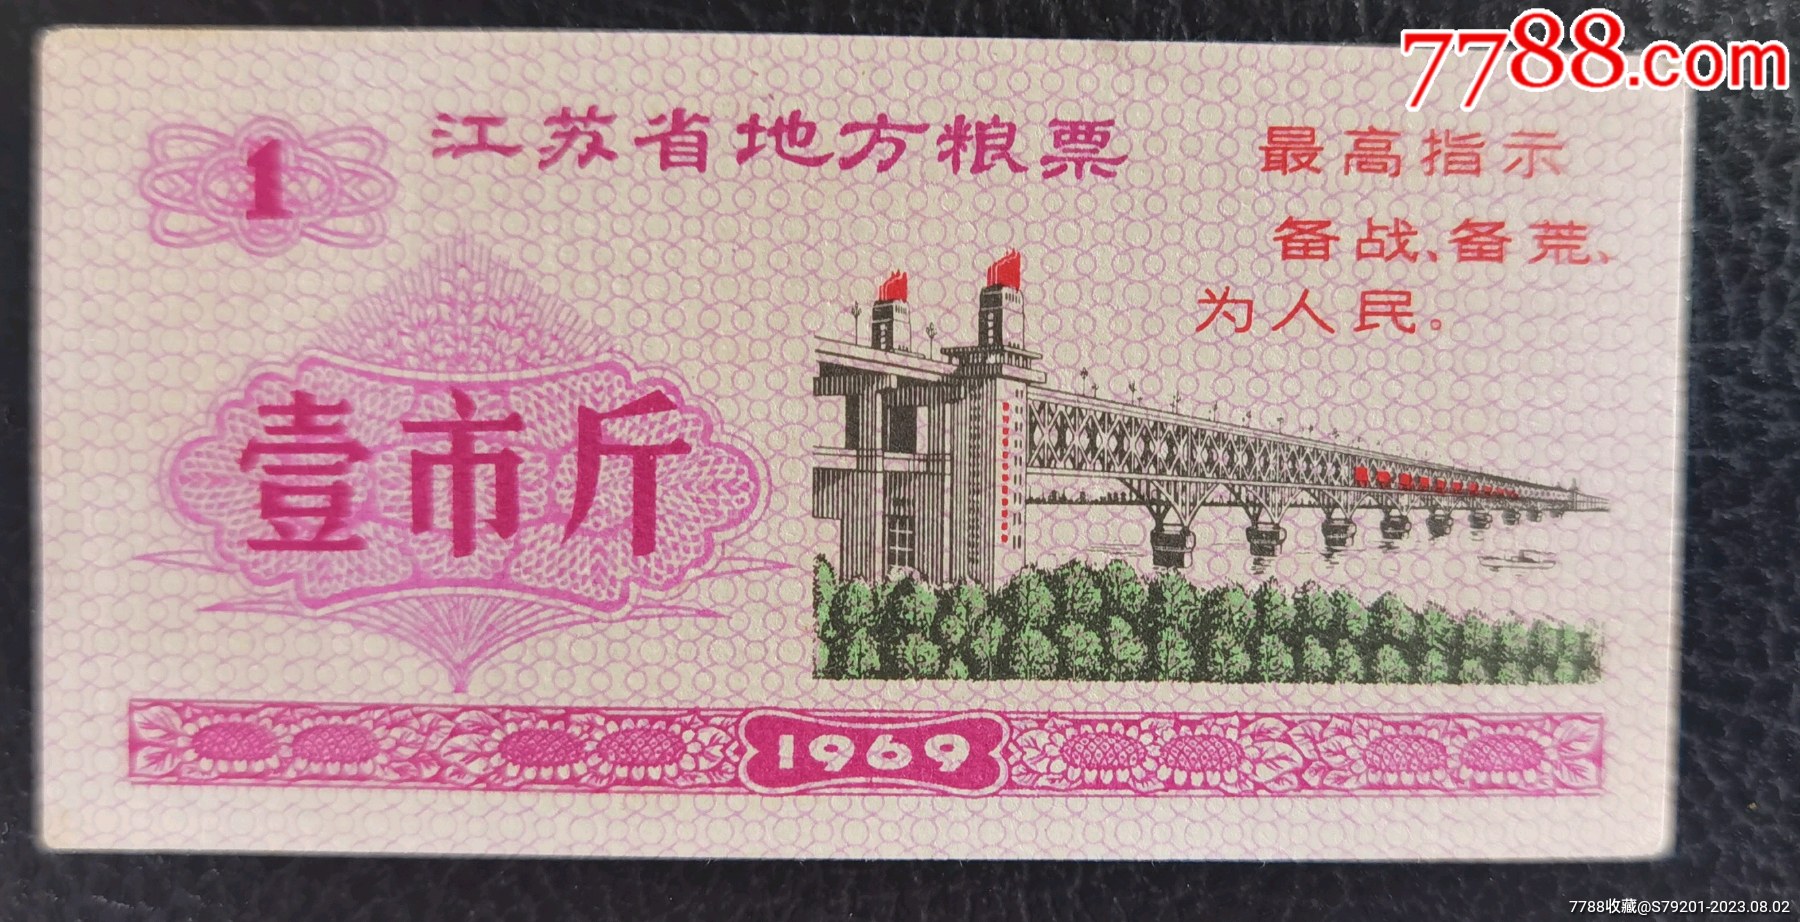 1966年粮票值钱图片